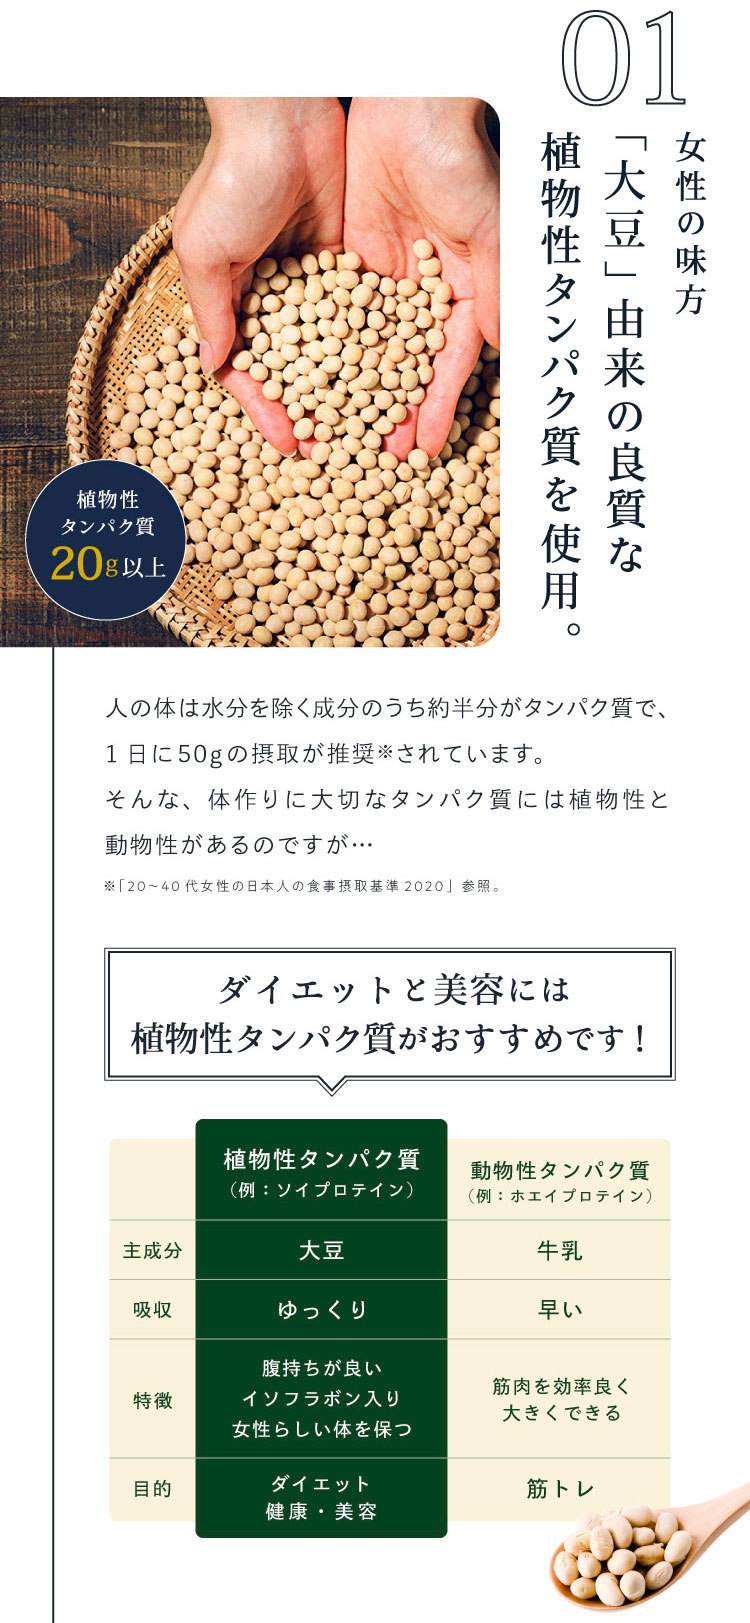 女性の味方「大豆」由来の良質な植物性タンパク質を使用